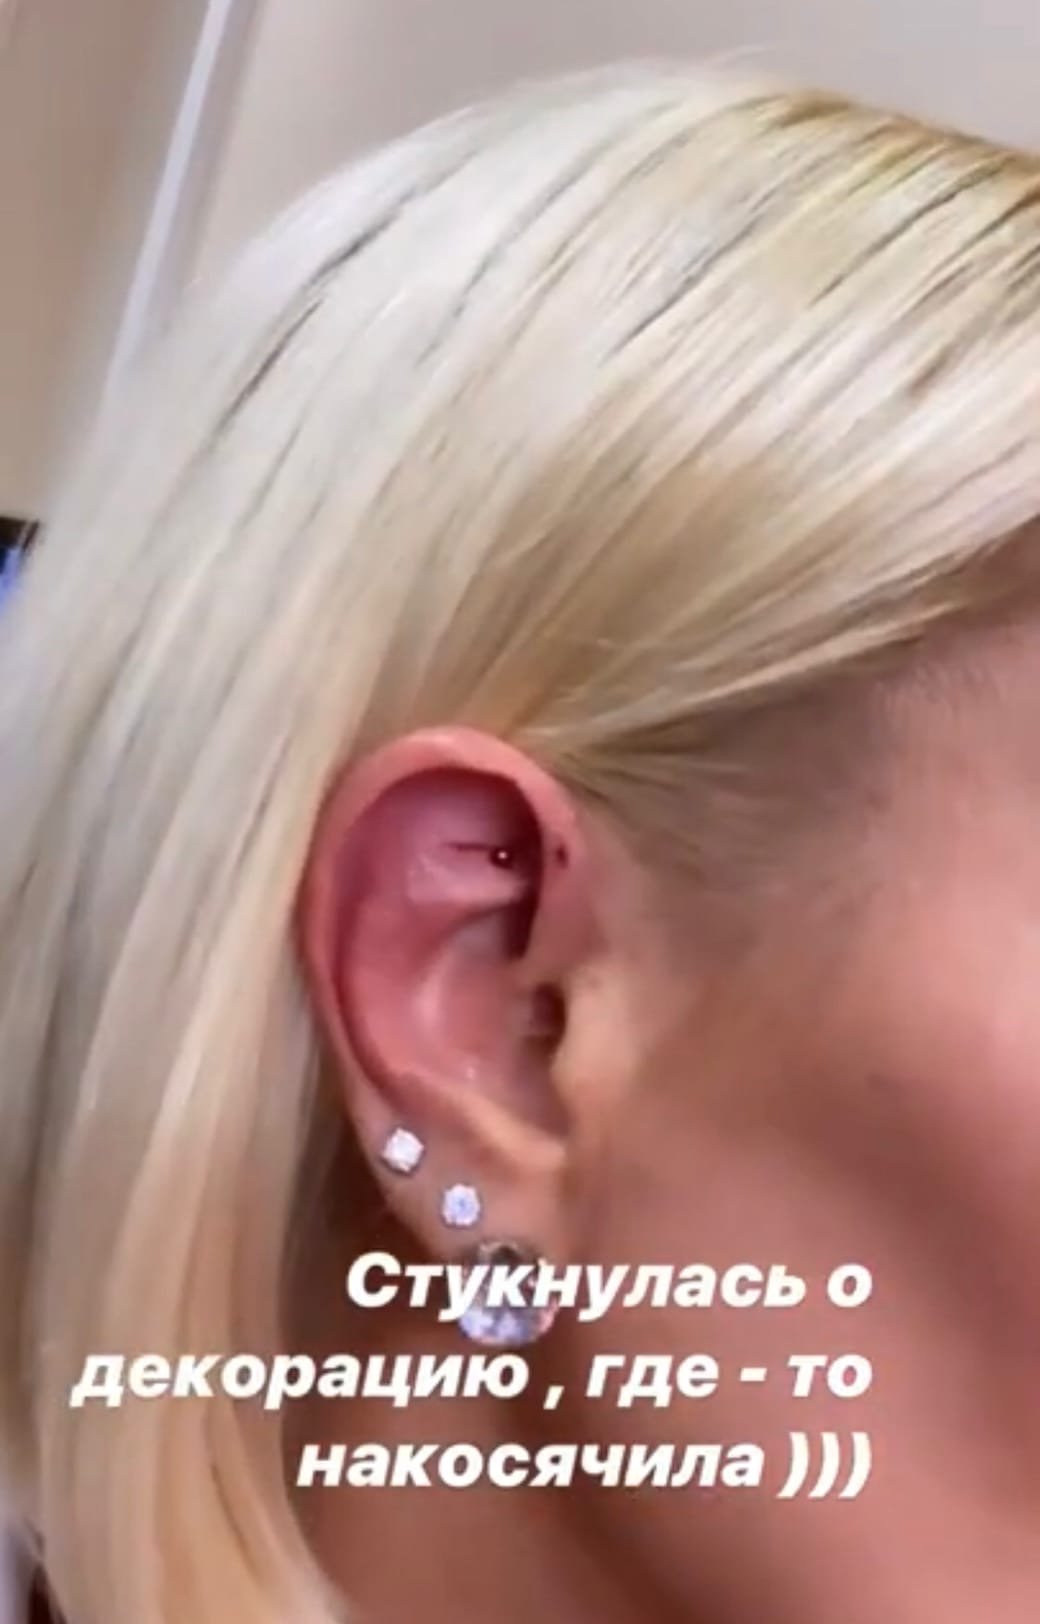 Лера Кудрявцева получила травму во время съемок